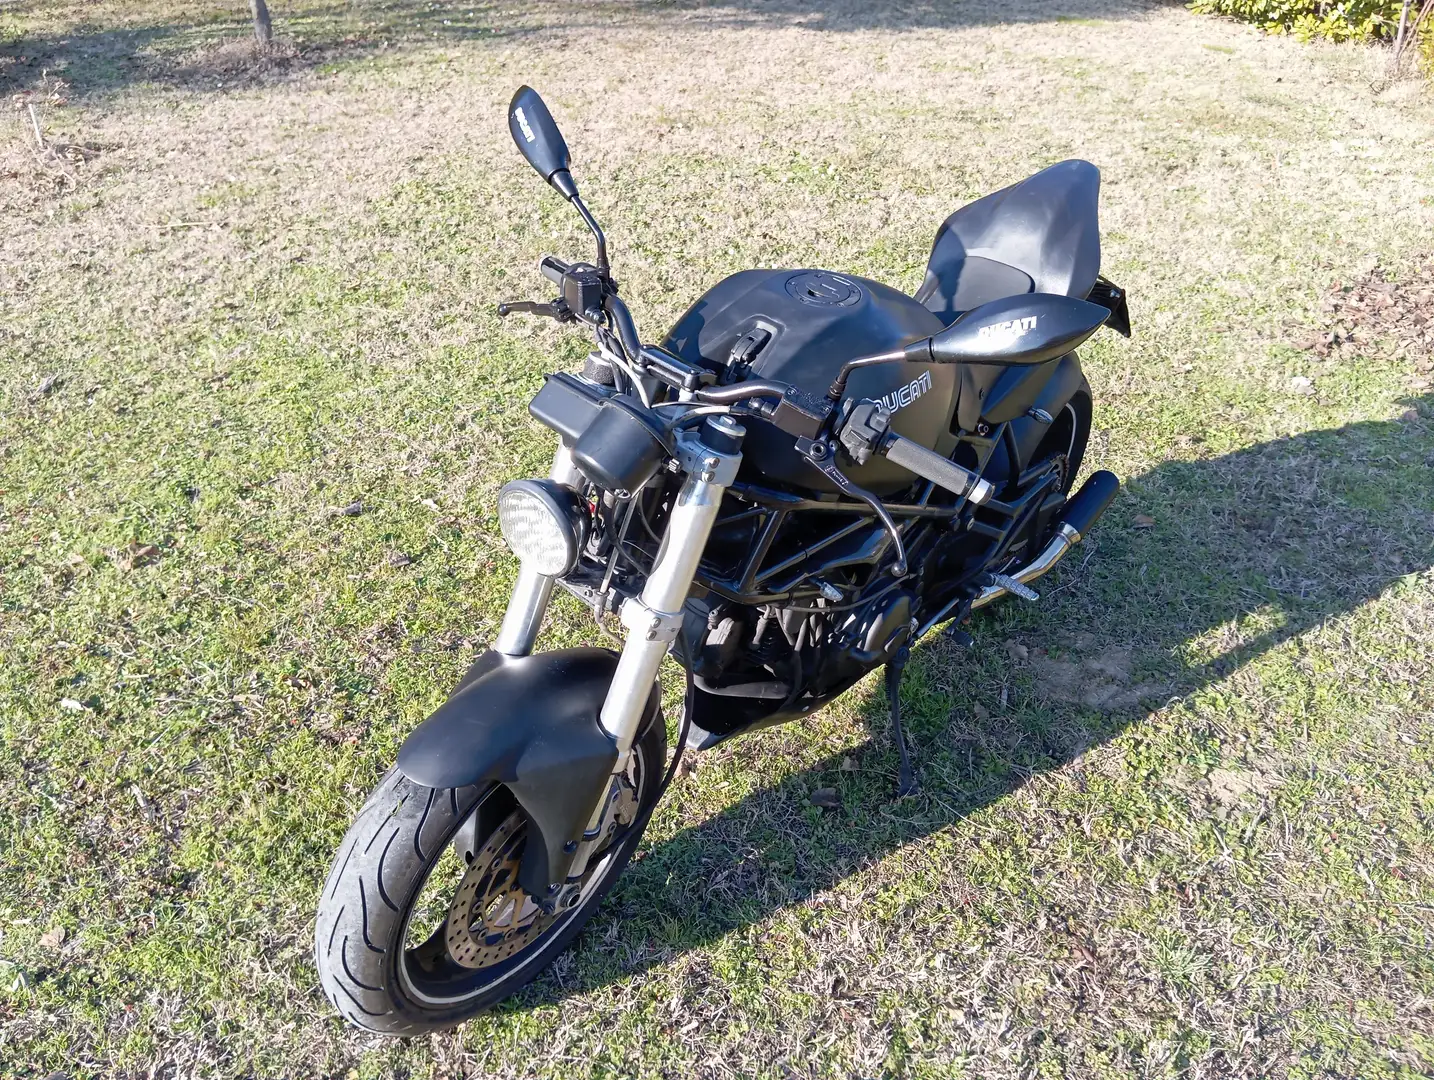 Ducati Monster 600 Black - 1